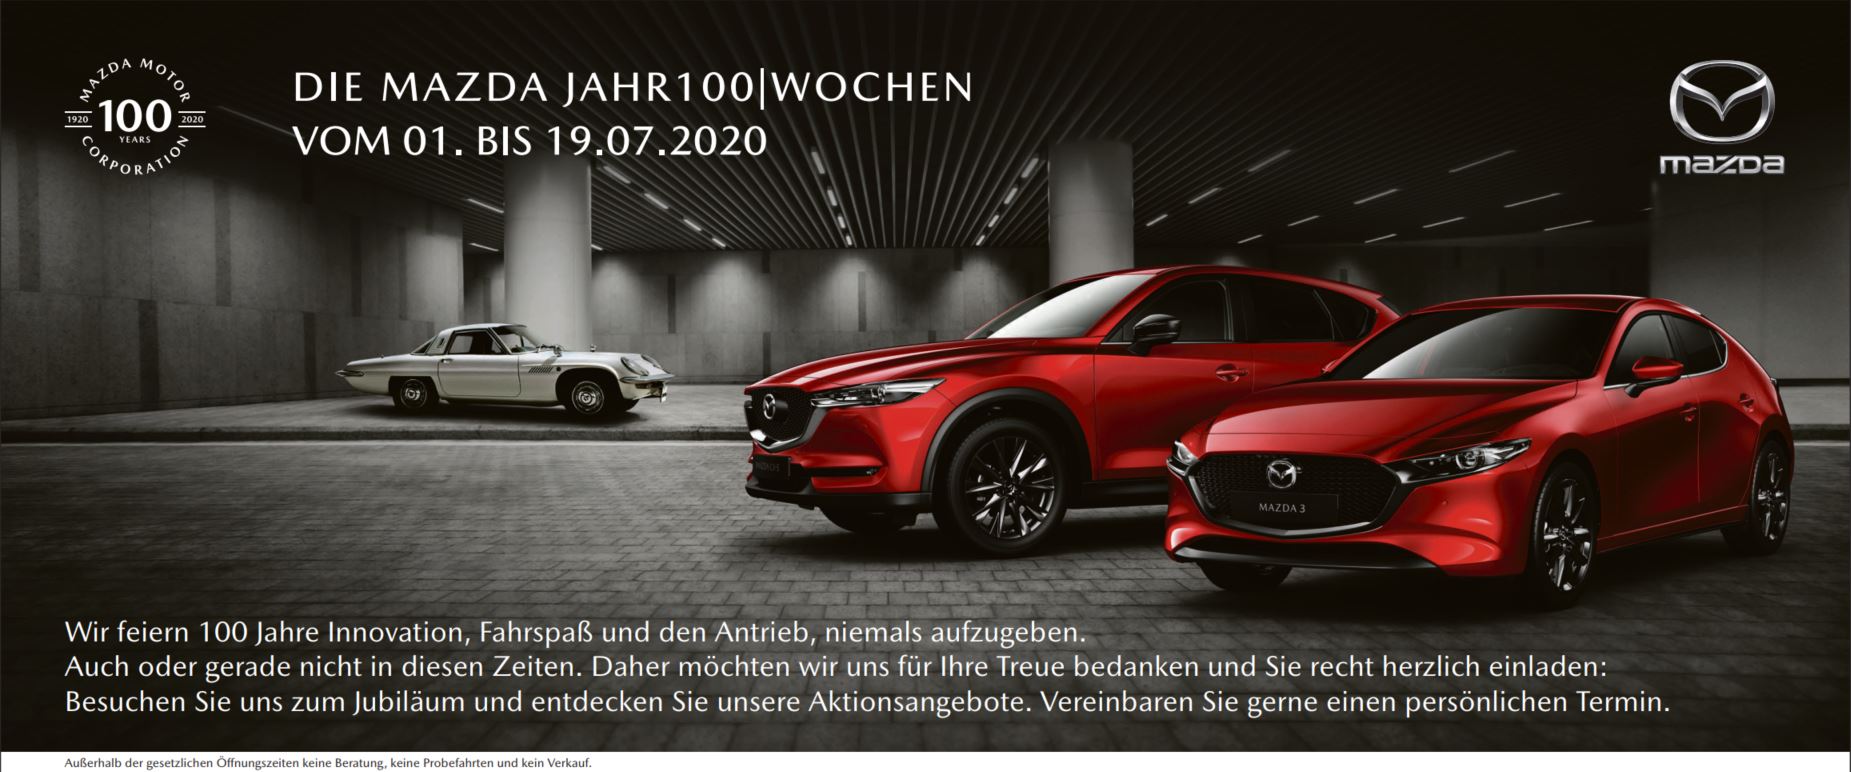 Mazda Jahr100Wochen Juli